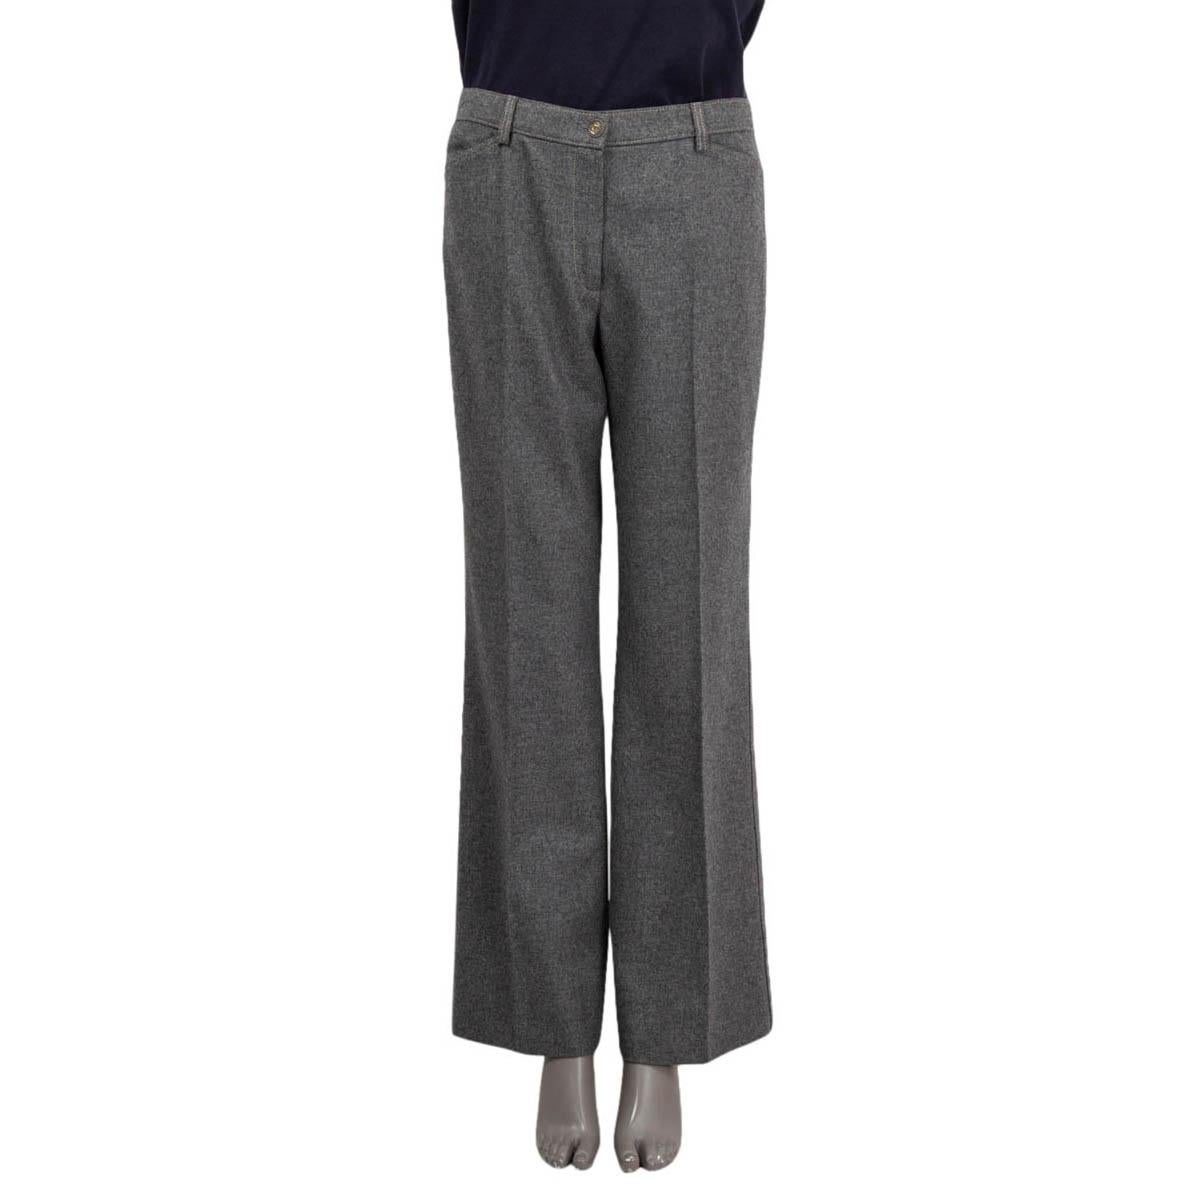 CHANEL - Pantalon à griffes en laine grise 2005 05A, 42 L